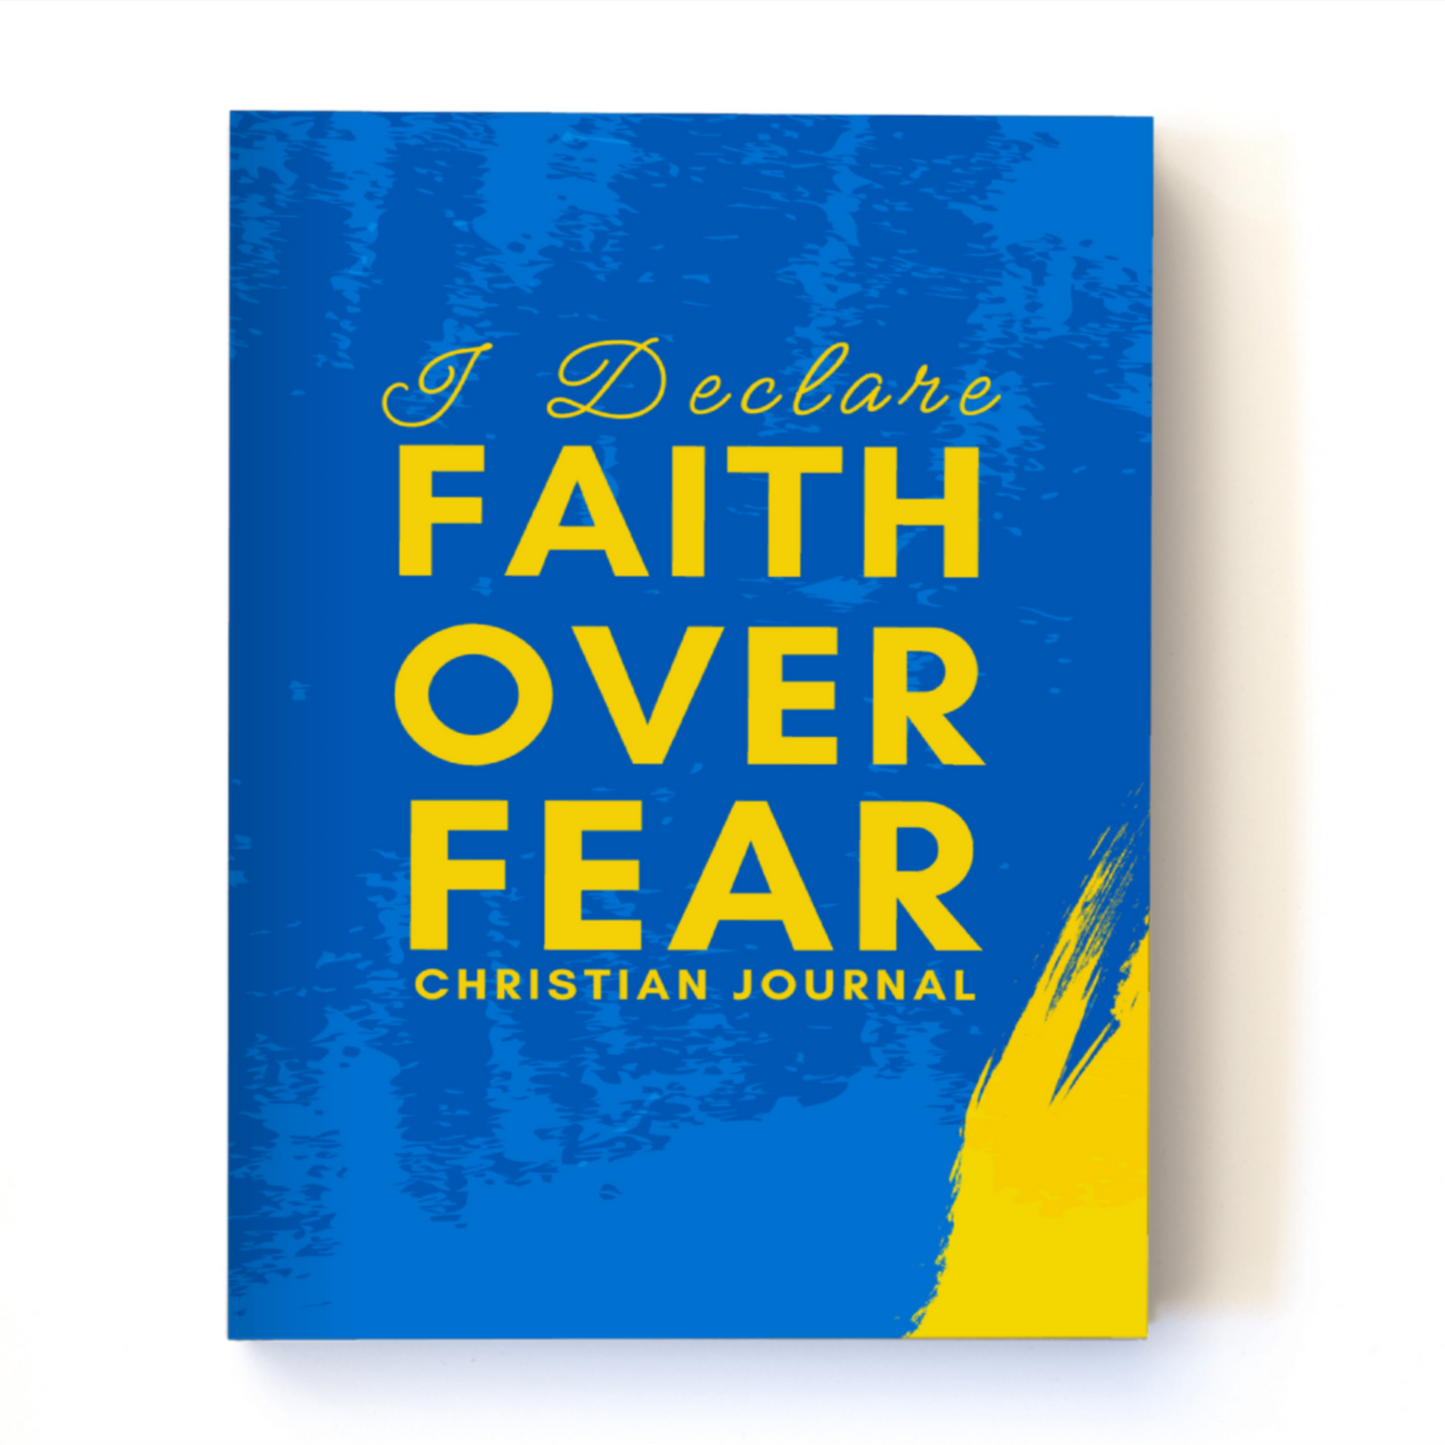 I Declare Faith Over Fear - Daily Christian Journal for Women